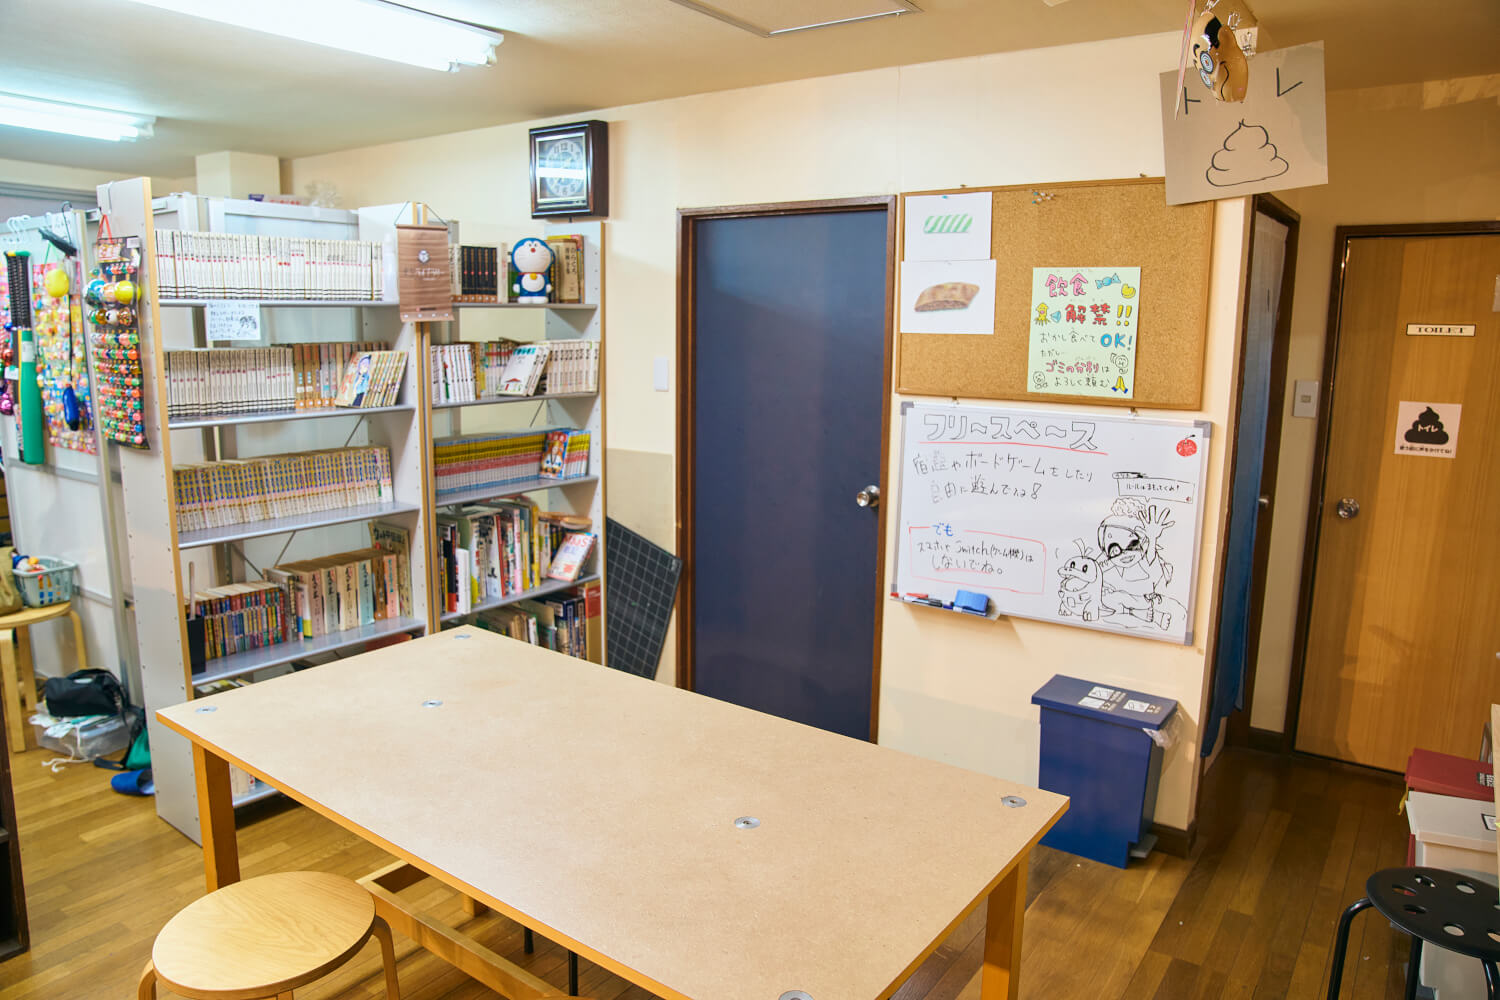 宿題やゲームができる机が置かれている。けん玉もあり、協会の創始者が西東京市出身という縁で寄贈されたそう。「盛り上げていきたいですね」。